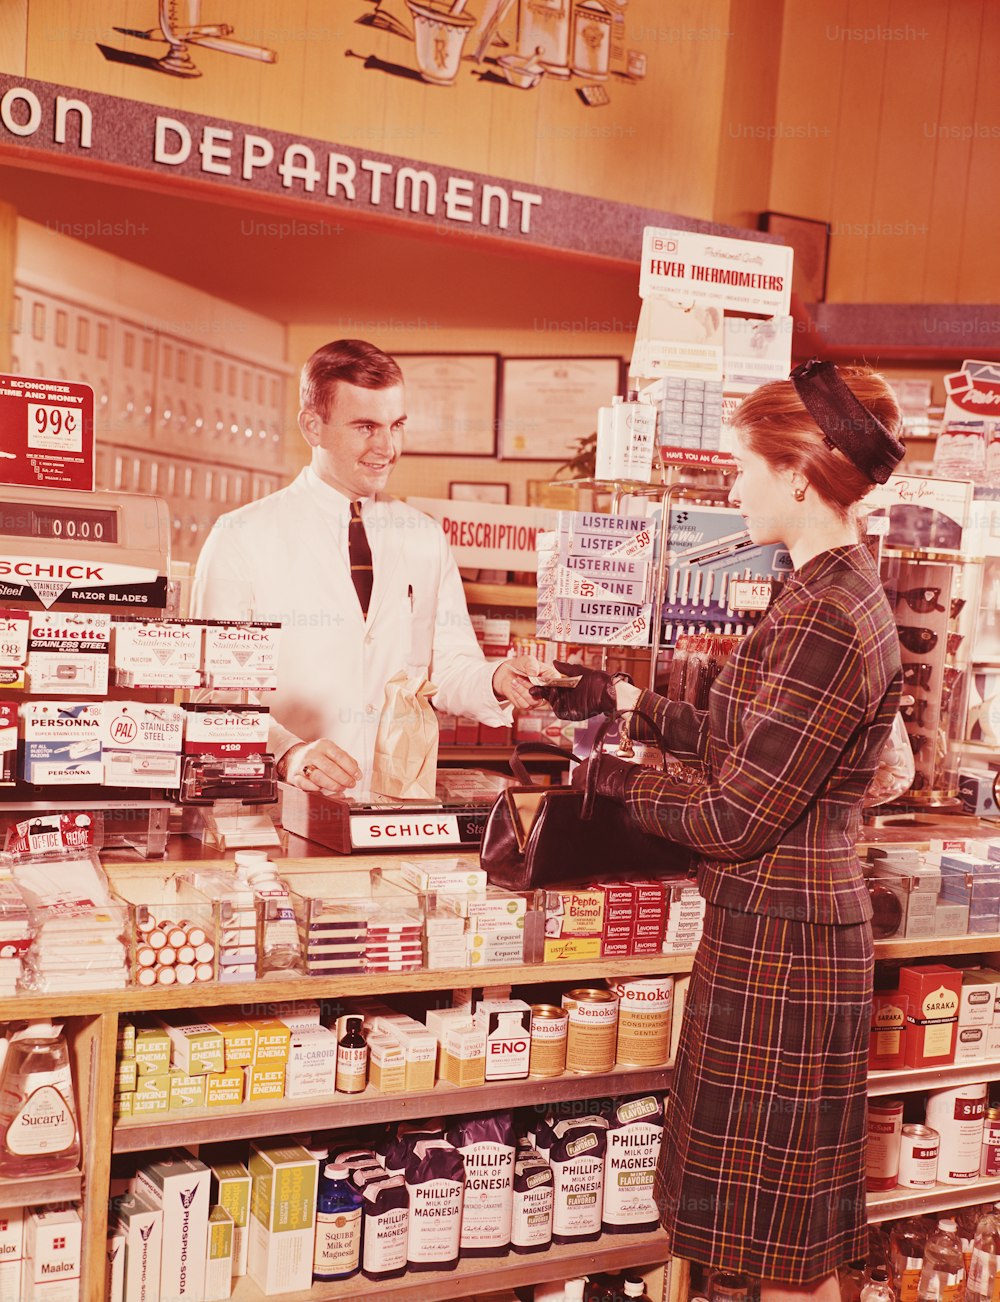 STATI UNITI - 1960 CIRCA: Donna al bancone della farmacia che parla con il farmacista.